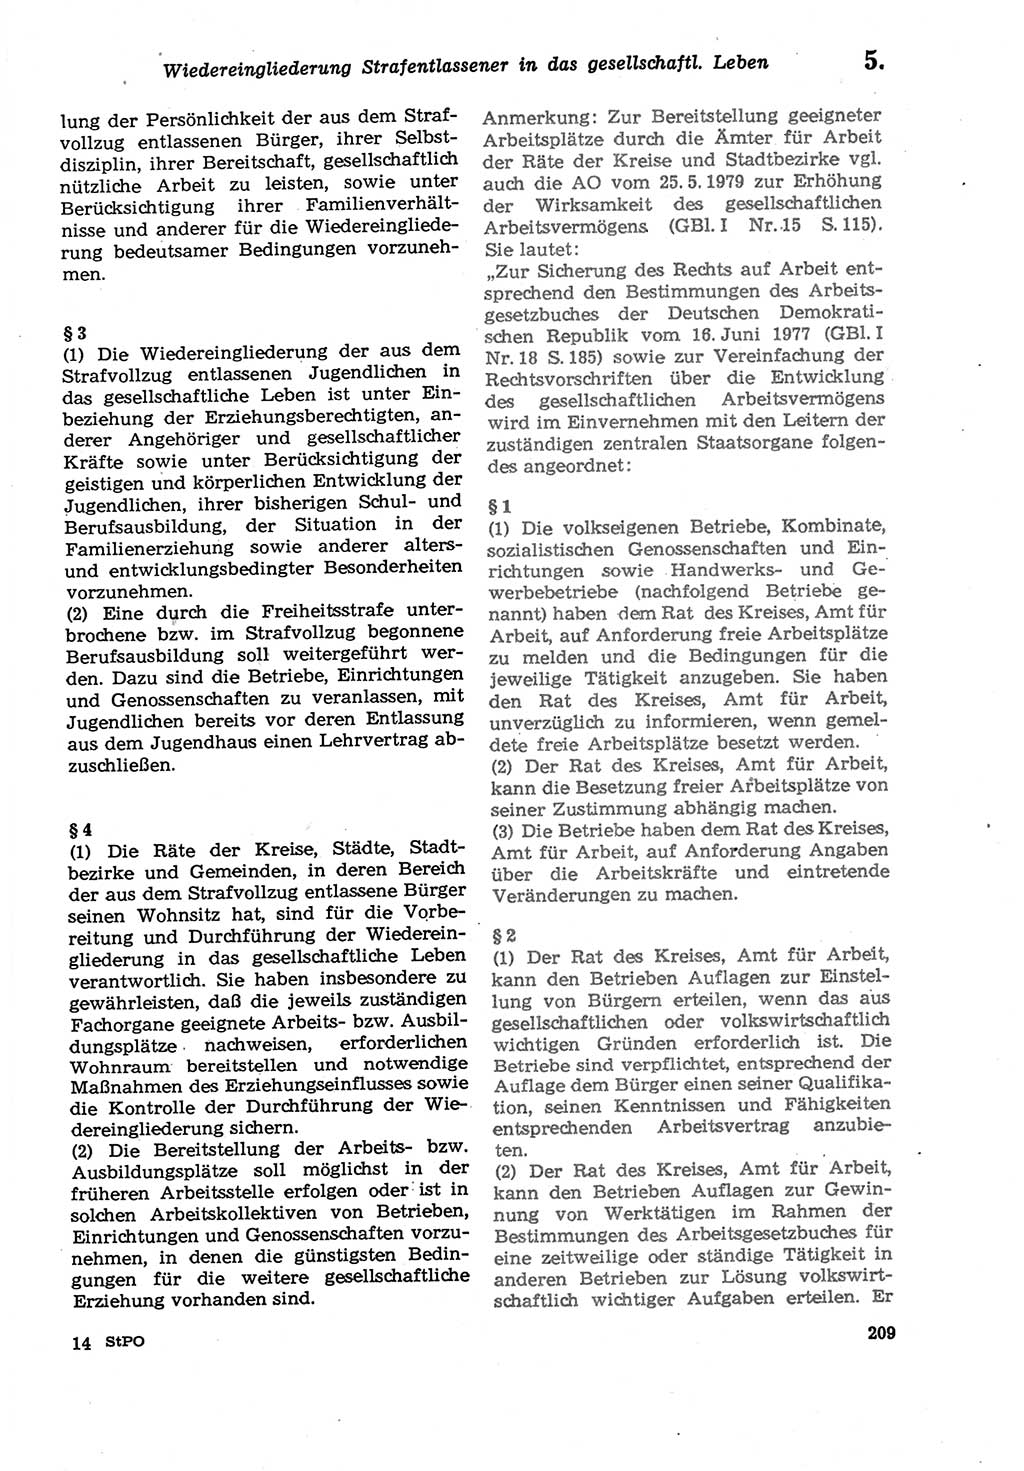 Strafprozeßordnung (StPO) der Deutschen Demokratischen Republik (DDR) sowie angrenzende Gesetze und Bestimmungen 1979, Seite 209 (StPO DDR Ges. Best. 1979, S. 209)